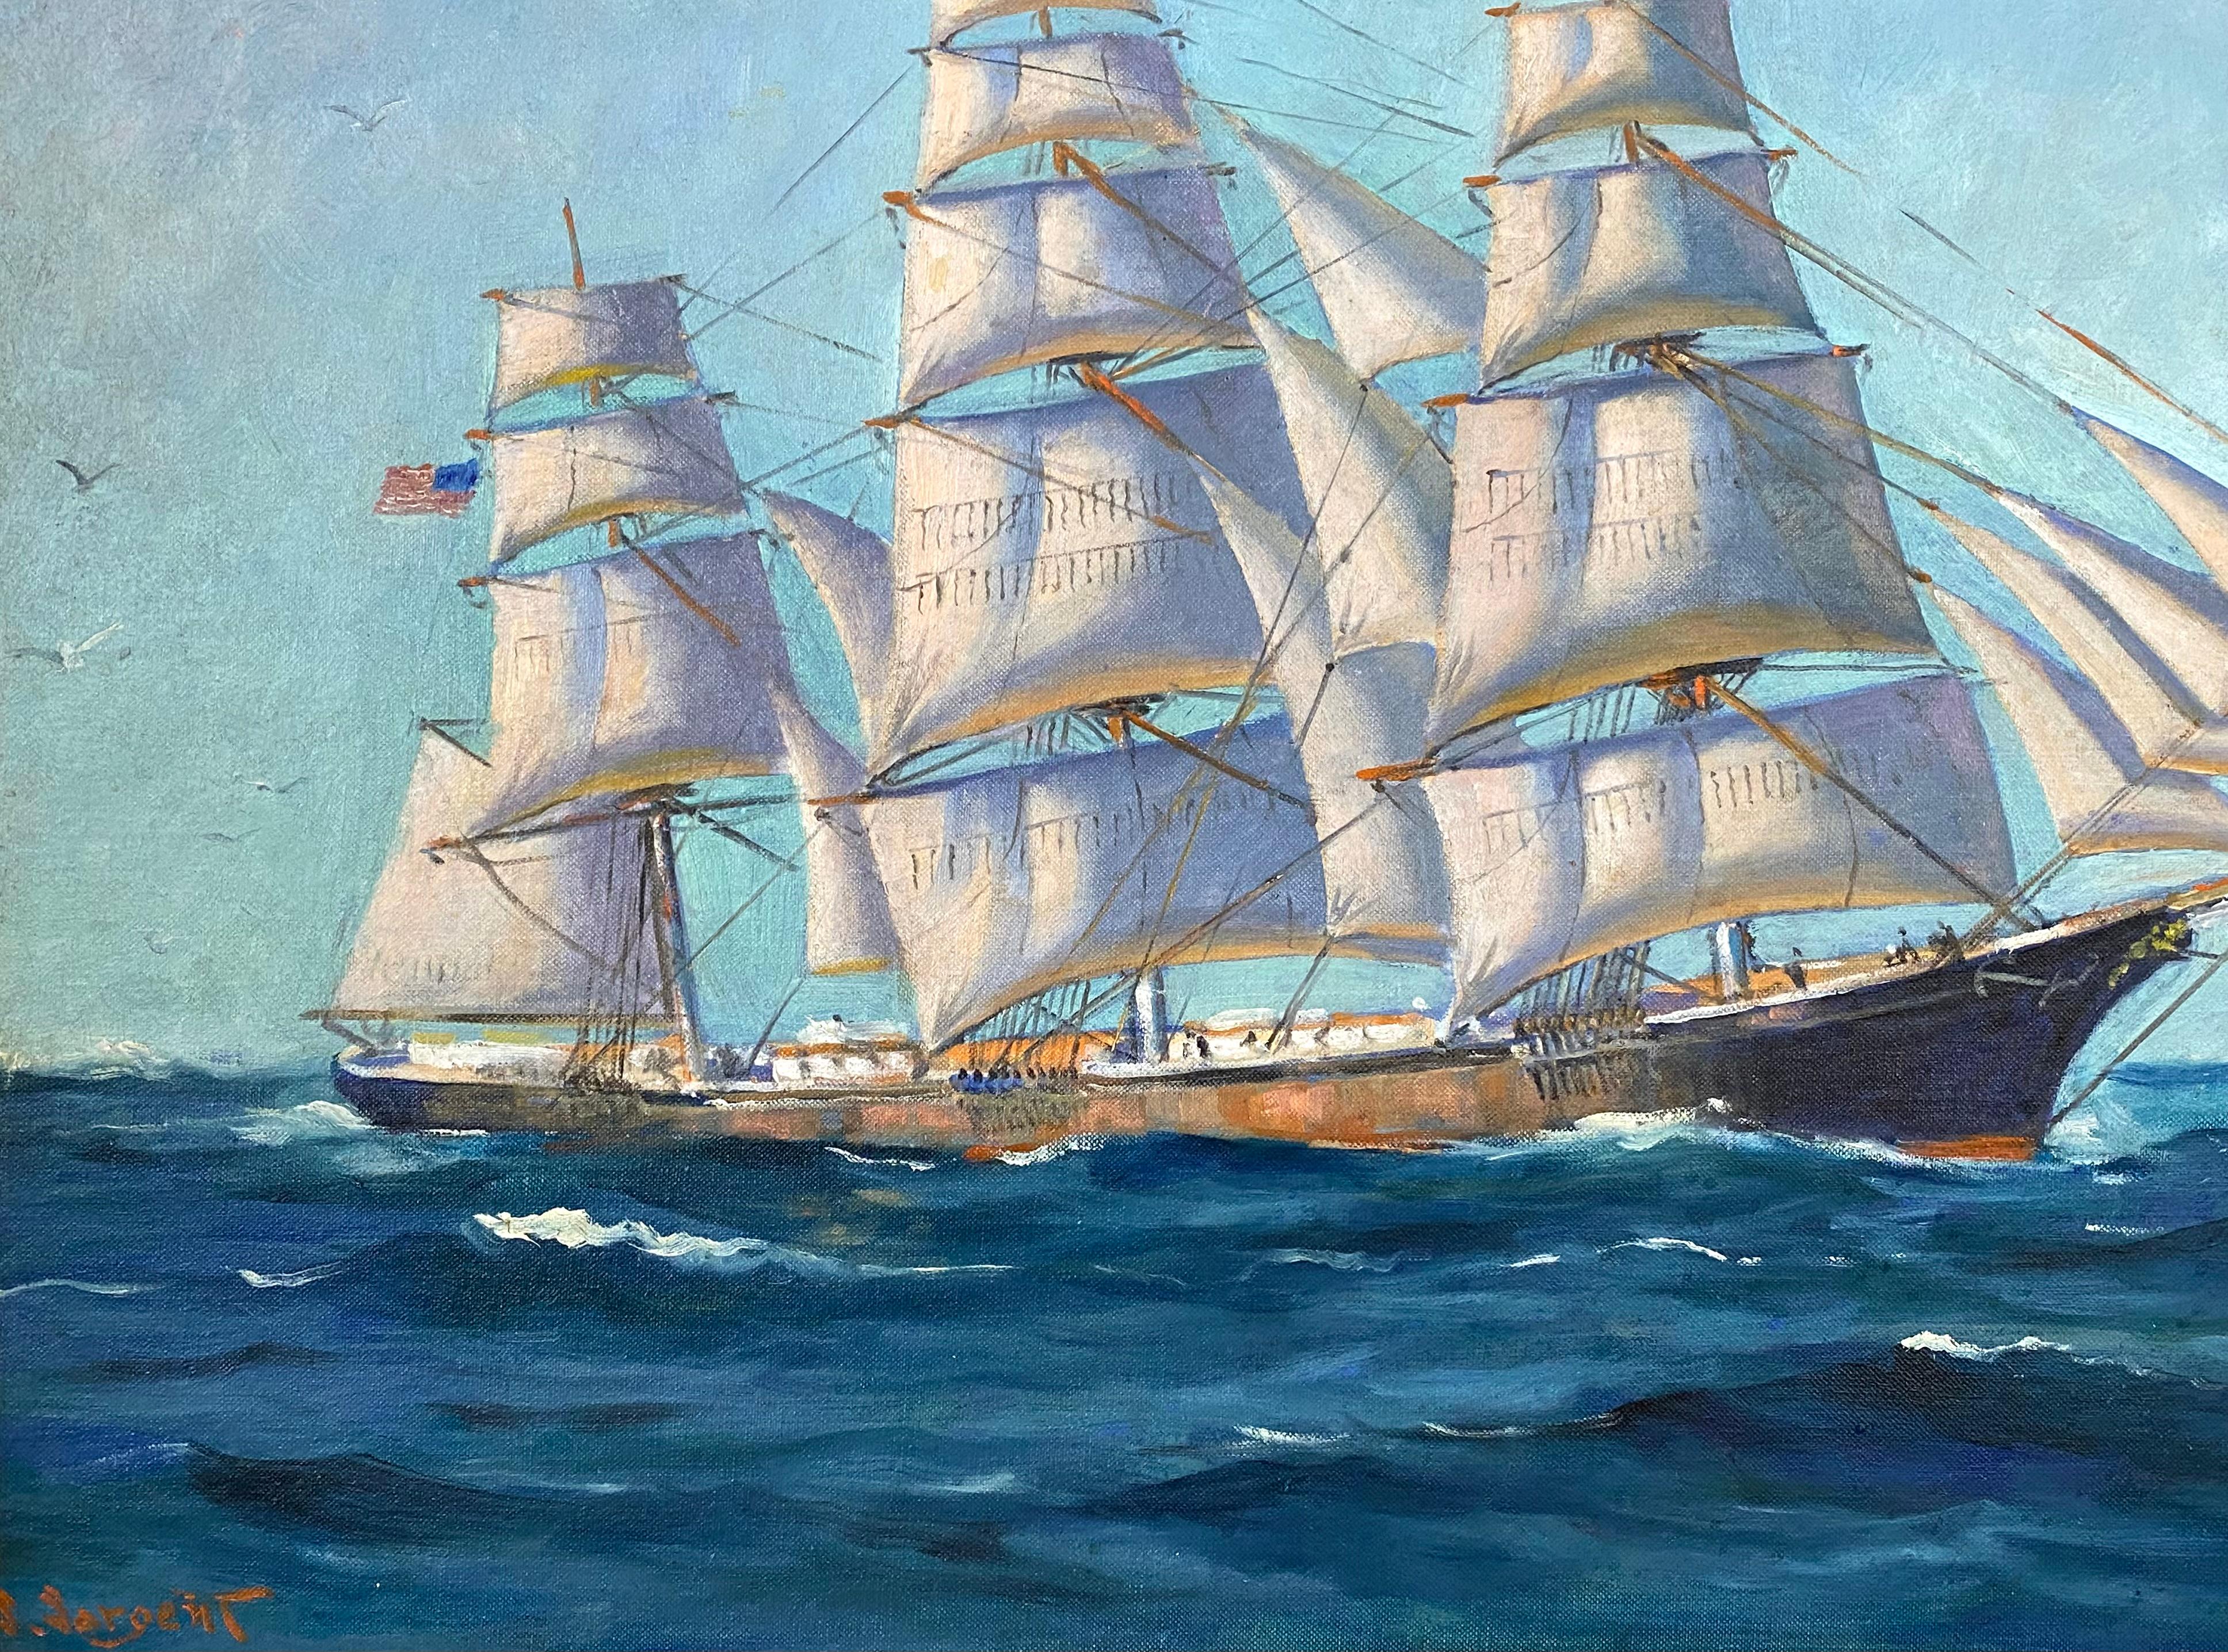 
Sehr gut ausgeführtes Öl auf Akademiekarton von dem bekannten amerikanischen Marine- und Porträtmaler Sam Sargent. Signiert unten links 